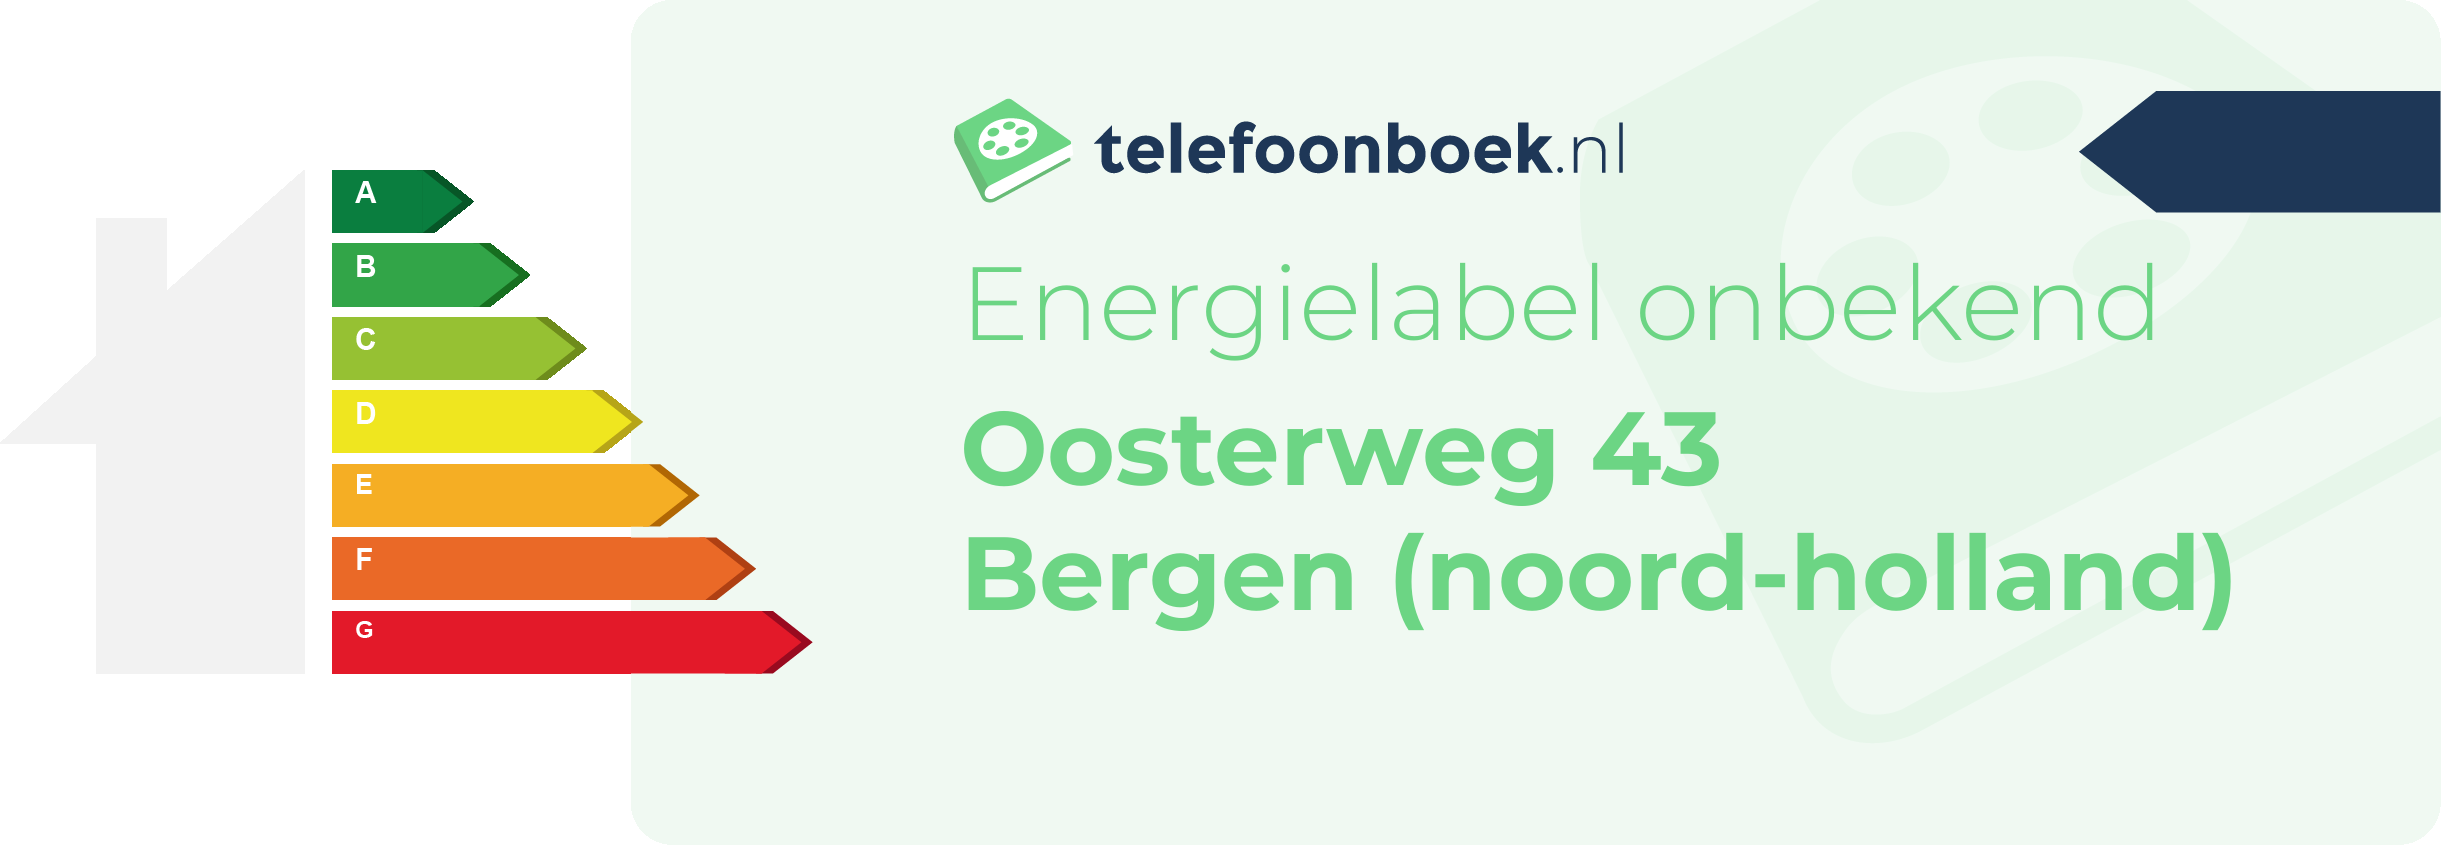 Energielabel Oosterweg 43 Bergen (Noord-Holland)